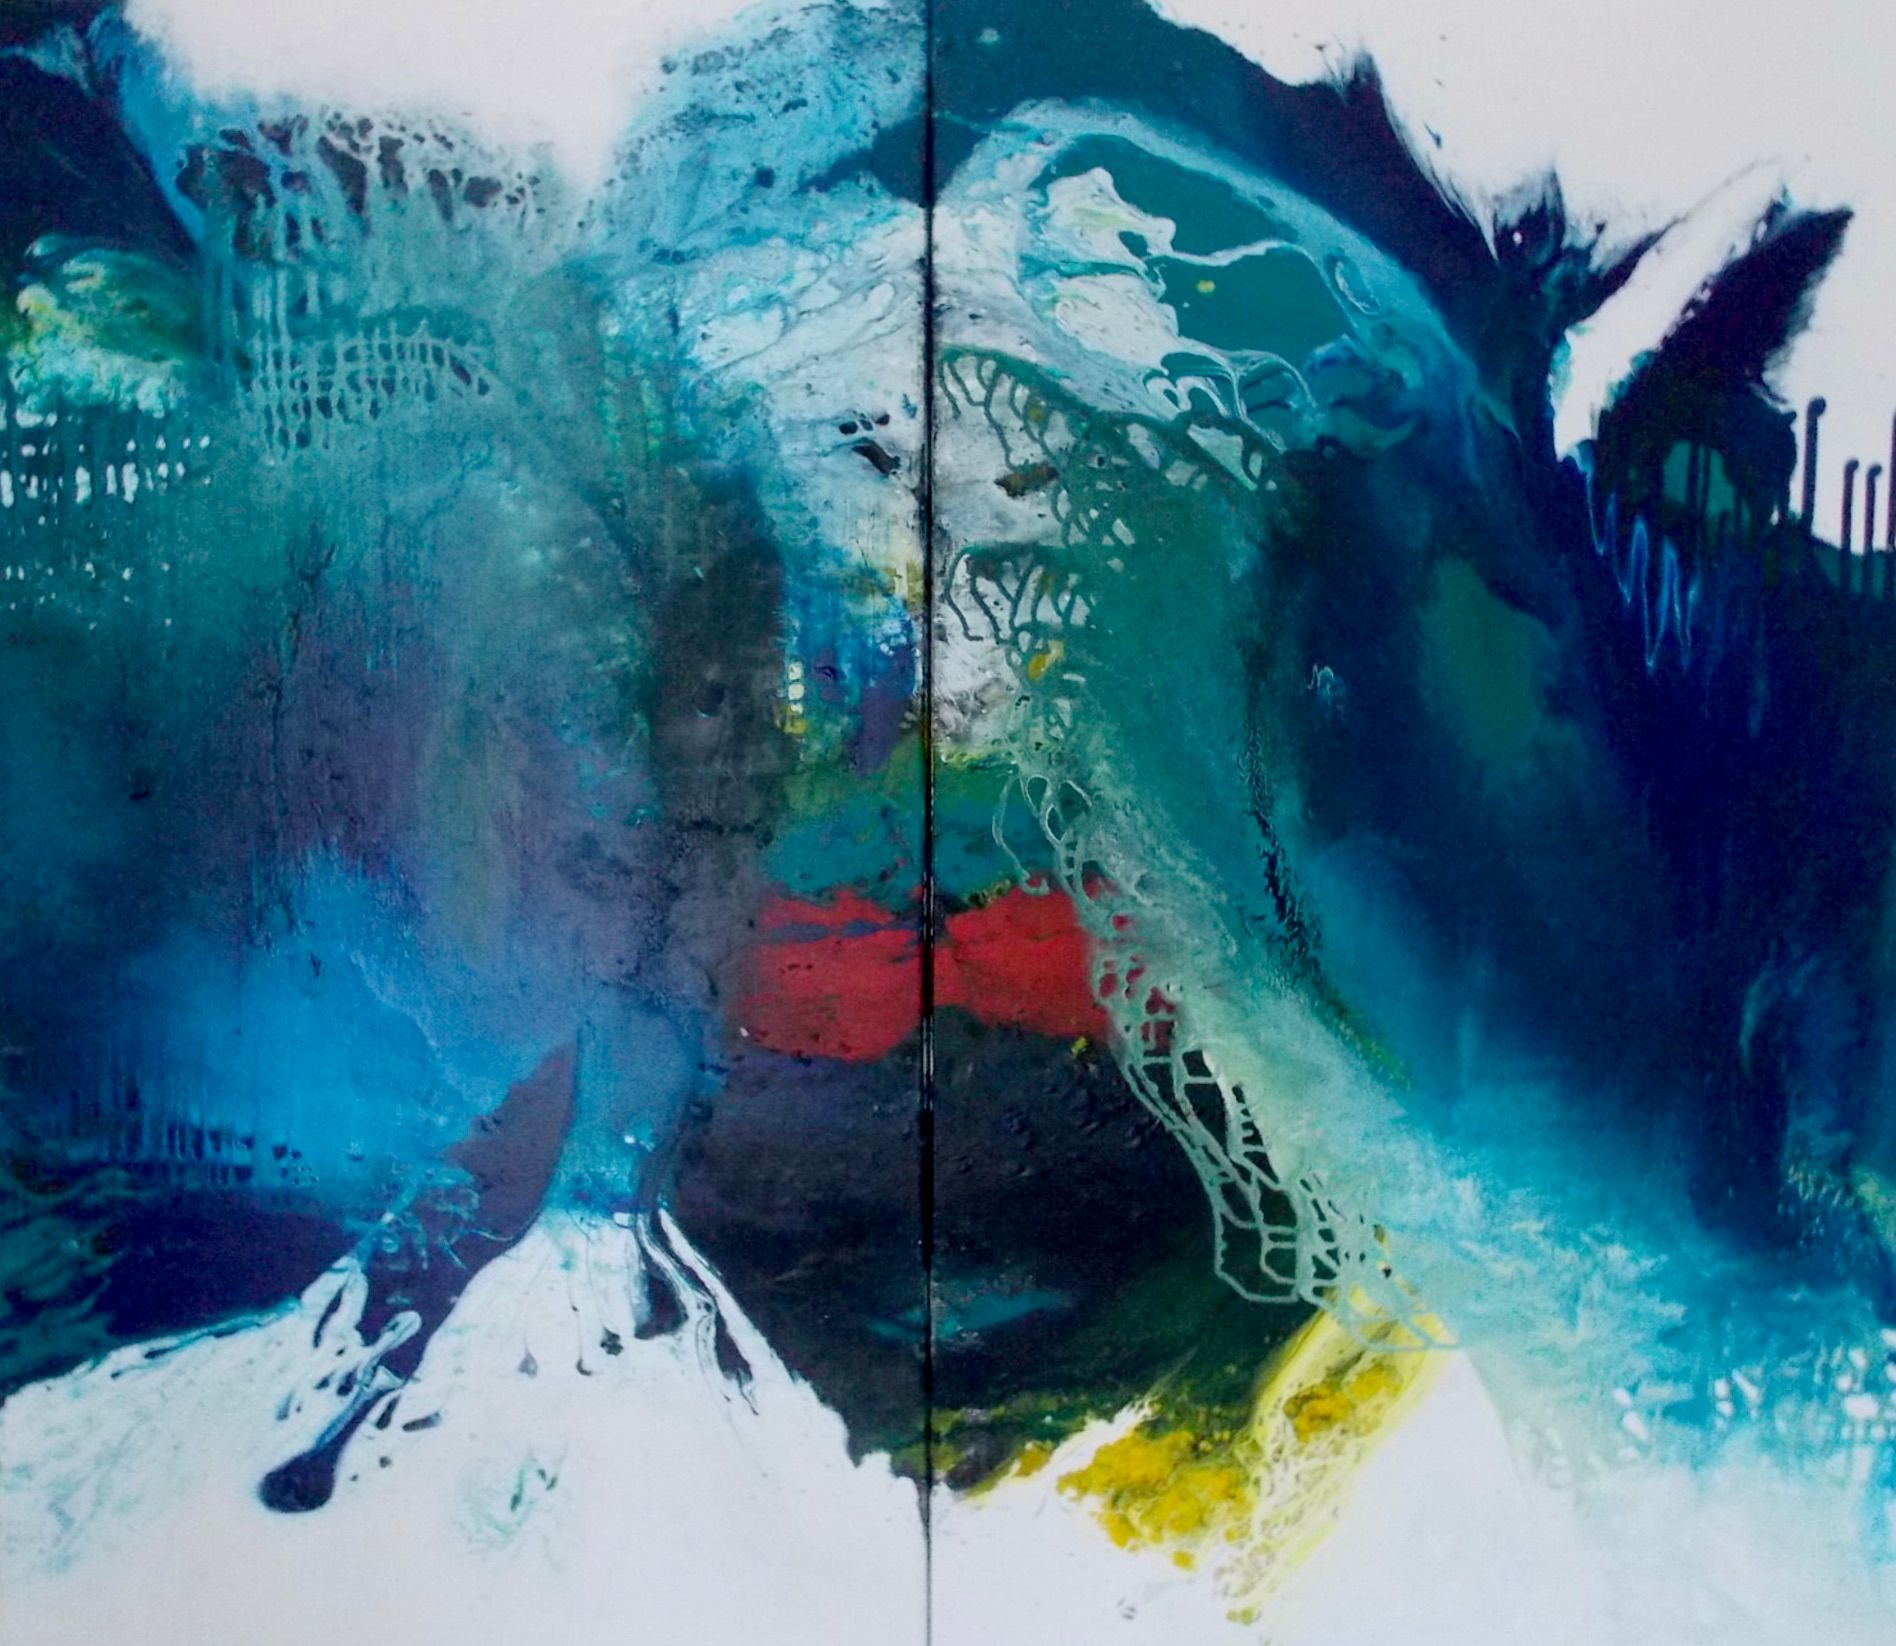 克里斯塔-哈克的 "蓝色识别1+2-双联画-"这幅抽象画由两幅图像连在一起组成。颜色主要是蓝色、绿松石色、绿色，还有一点红色和黄色。